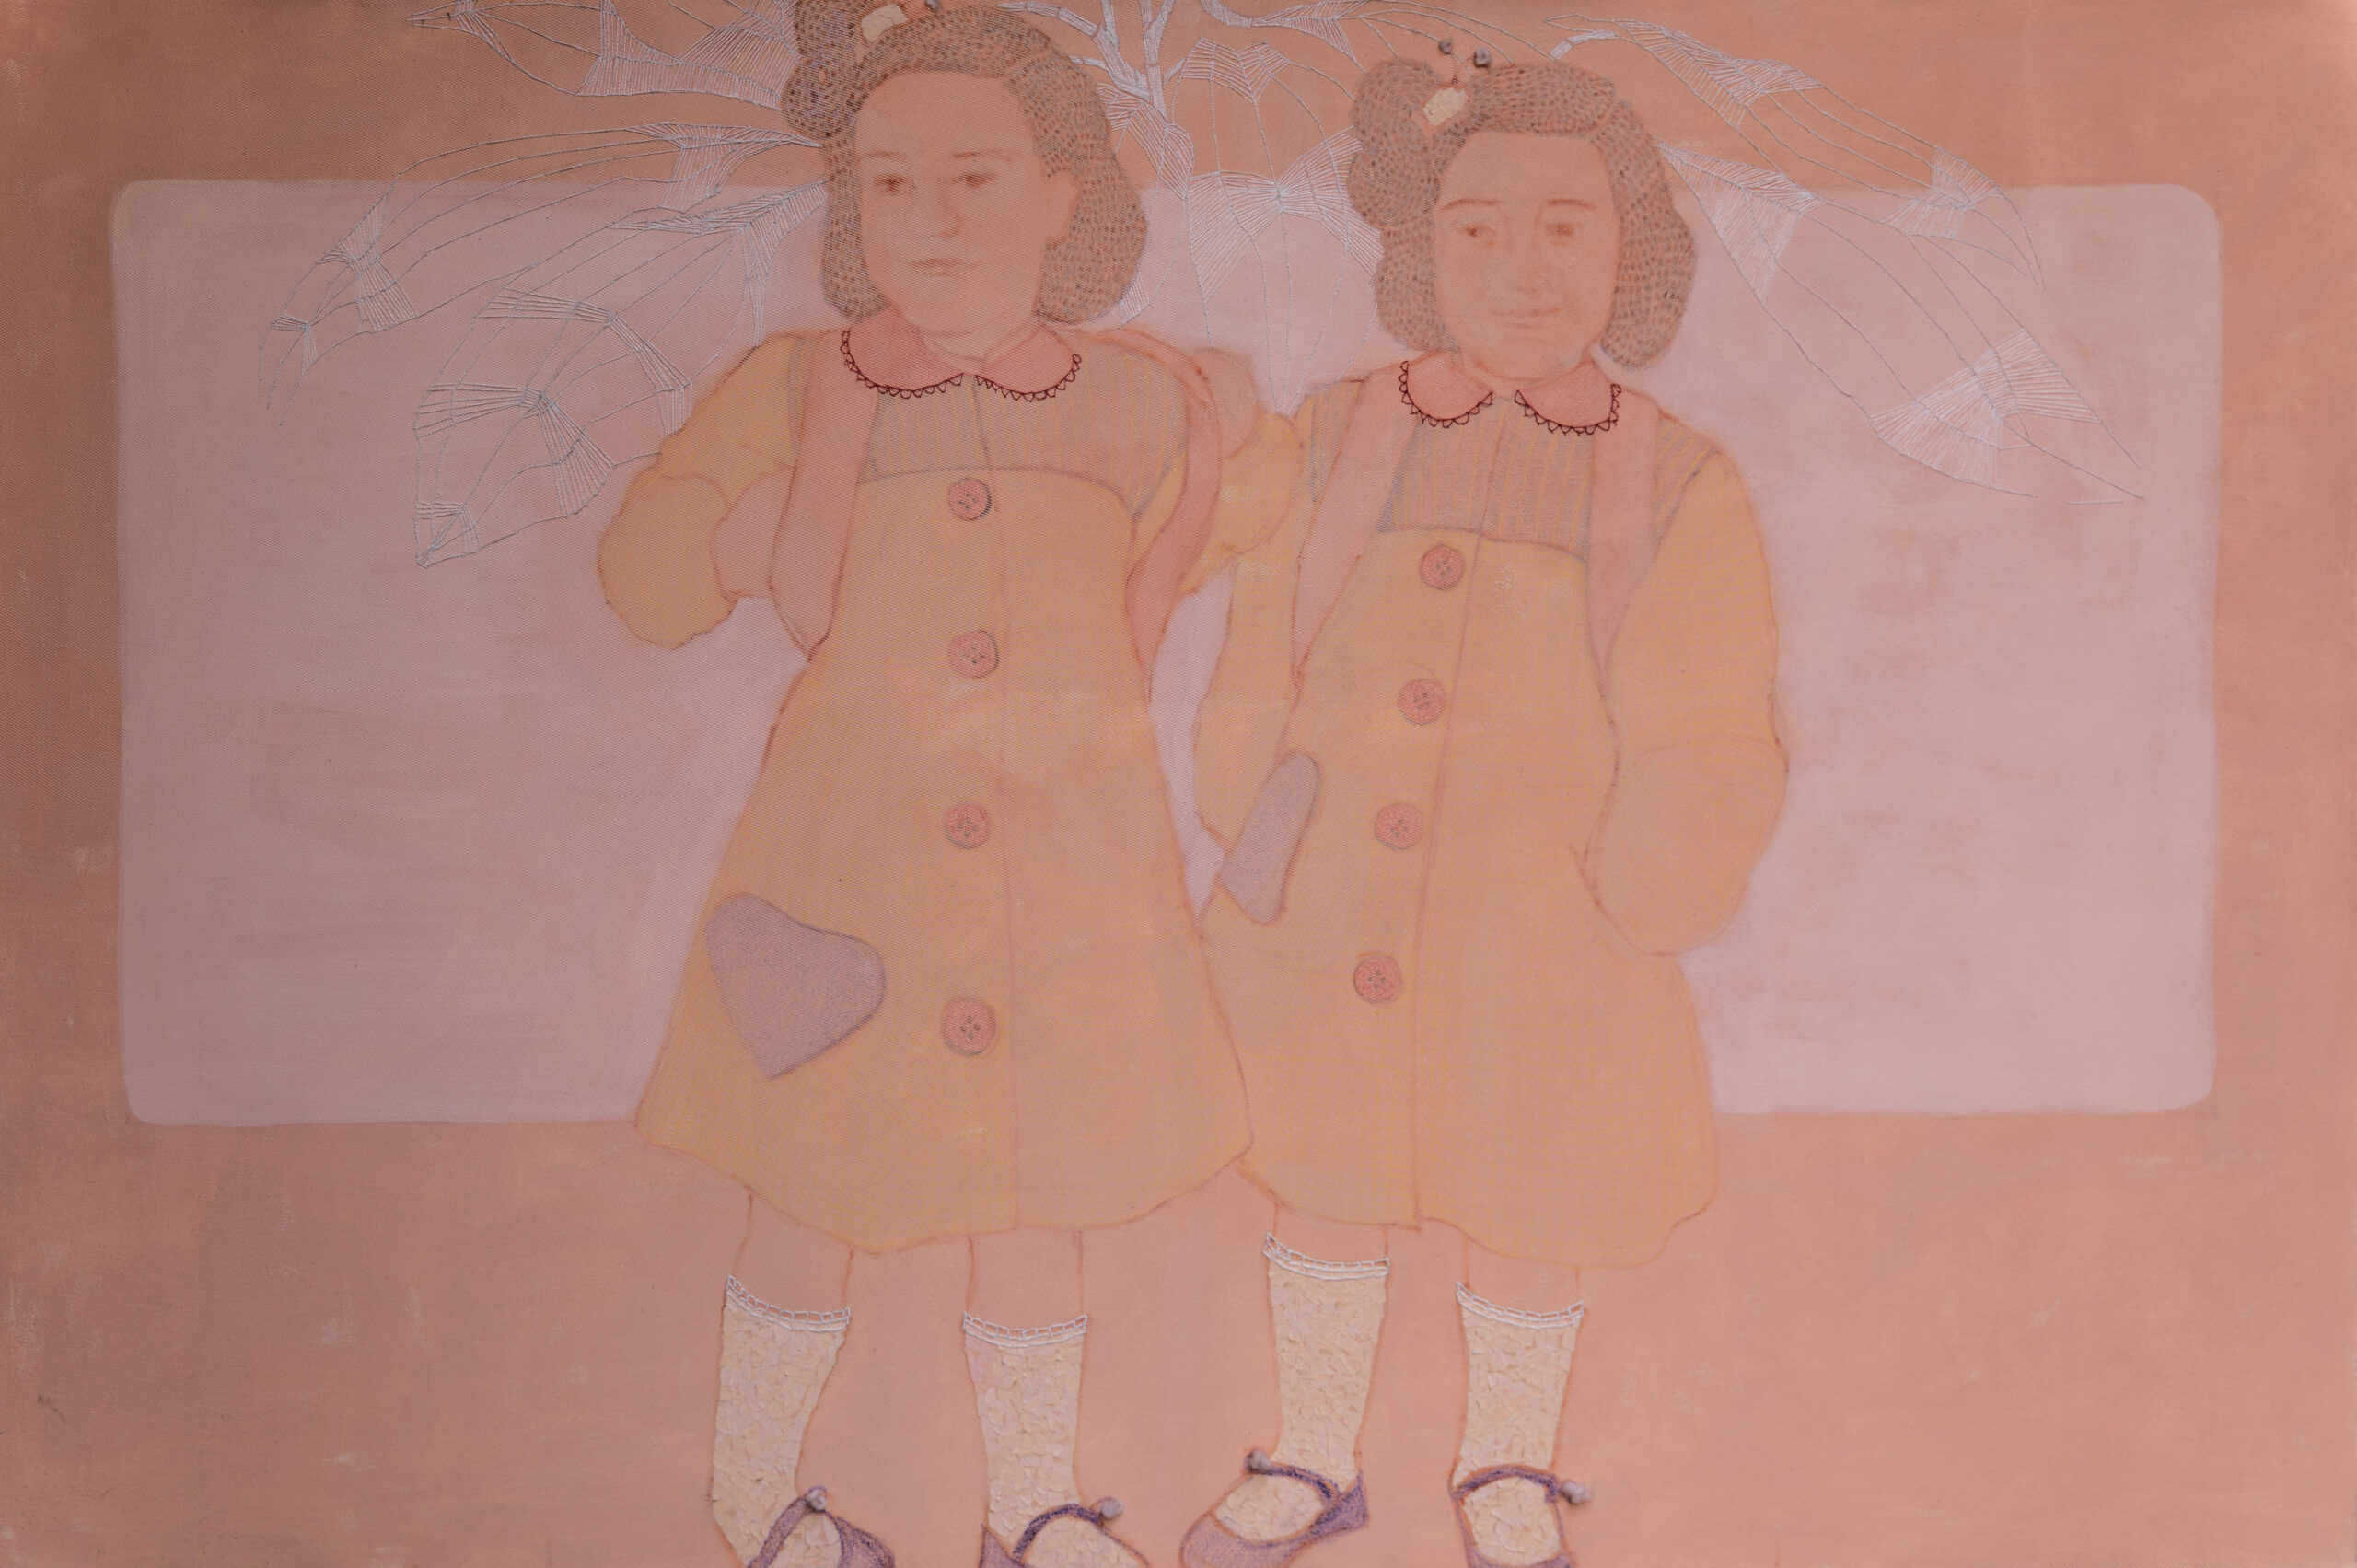 Mamma e Figlia, Acrylic, Pencils, thread and colored paper on canvas.,100x150cm, 2014.|